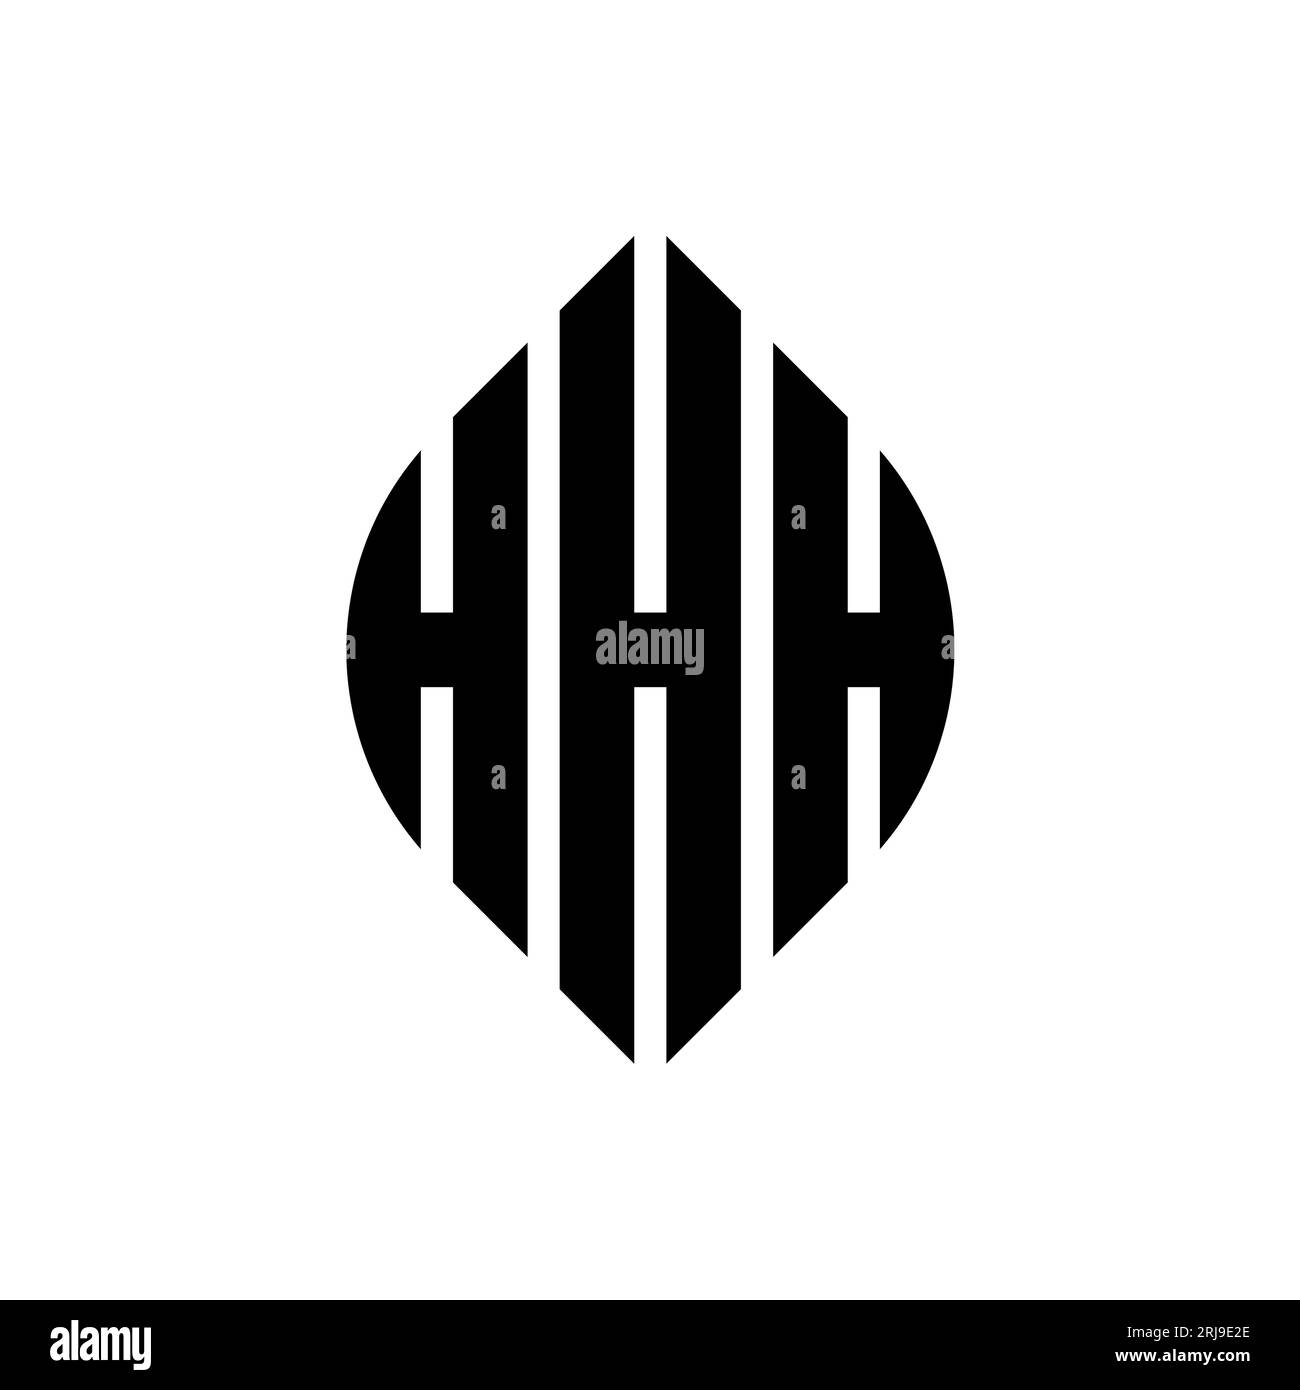 HHH kreisförmiges Logo mit Kreis- und Ellipsenform. HHH-Ellipsenbuchstaben im typografischen Stil. Die drei Initialen bilden ein kreisförmiges Logo. HHH CI Stock Vektor